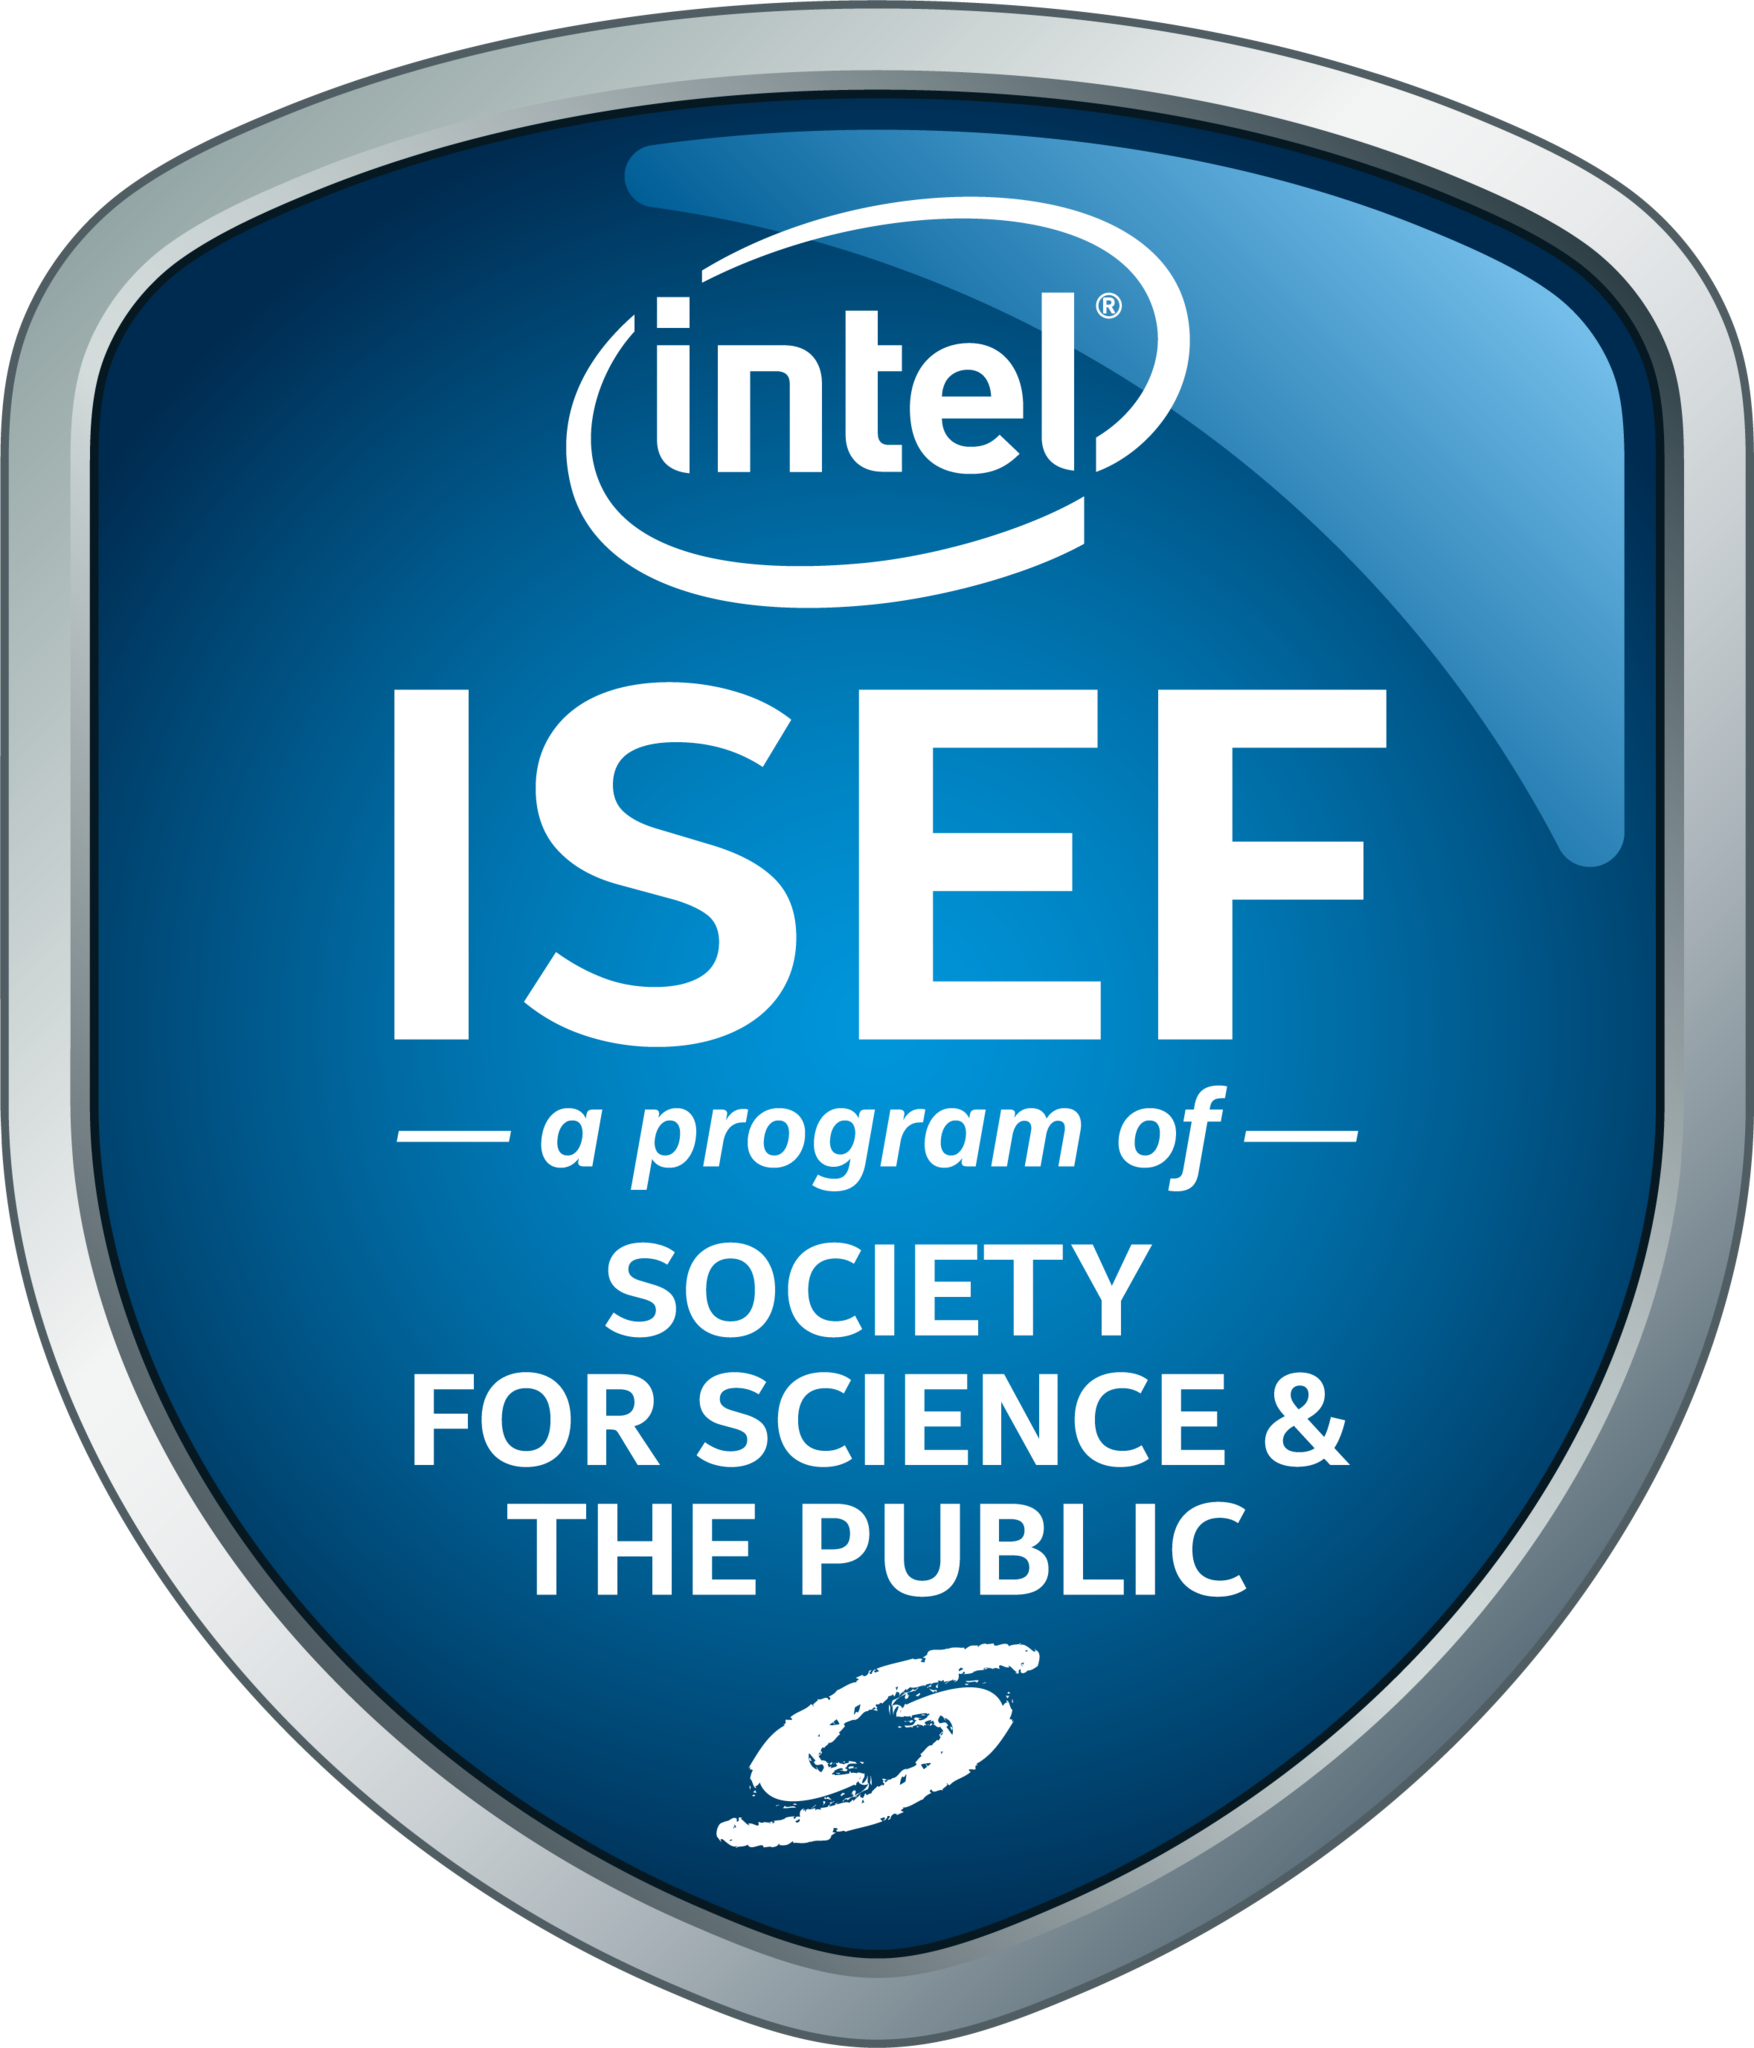 Intel ISEF 2018